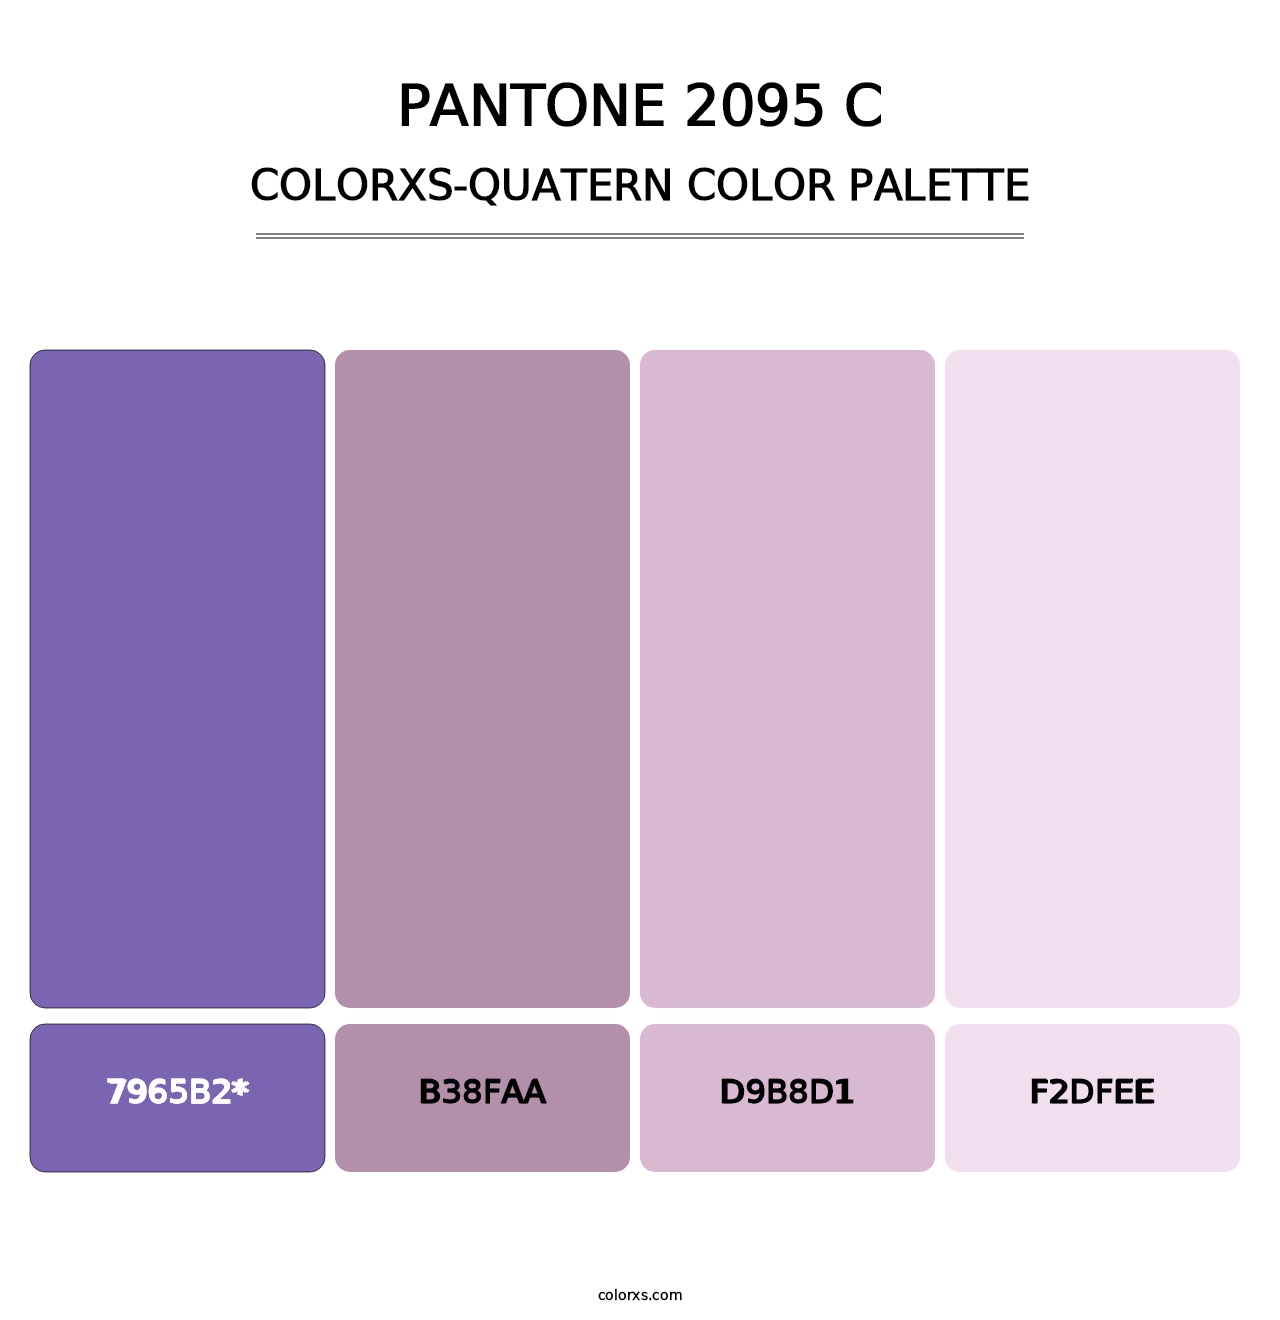 PANTONE 2095 C - Colorxs Quatern Palette